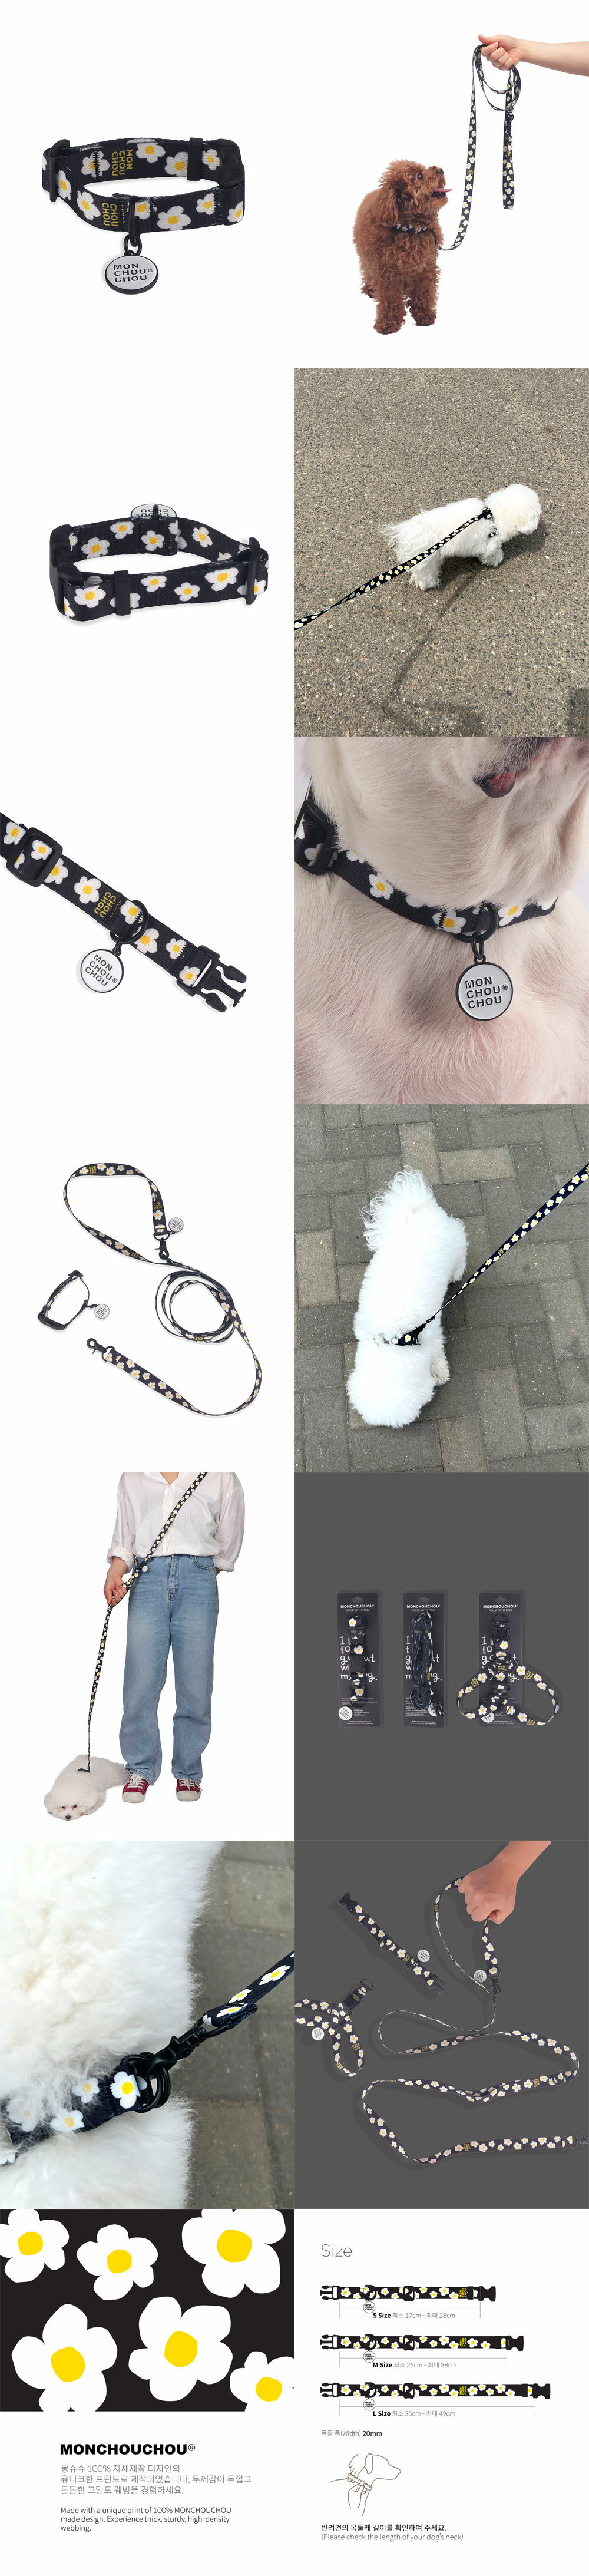 Walk-with-dog_Collar-Daisy-Info.jpg